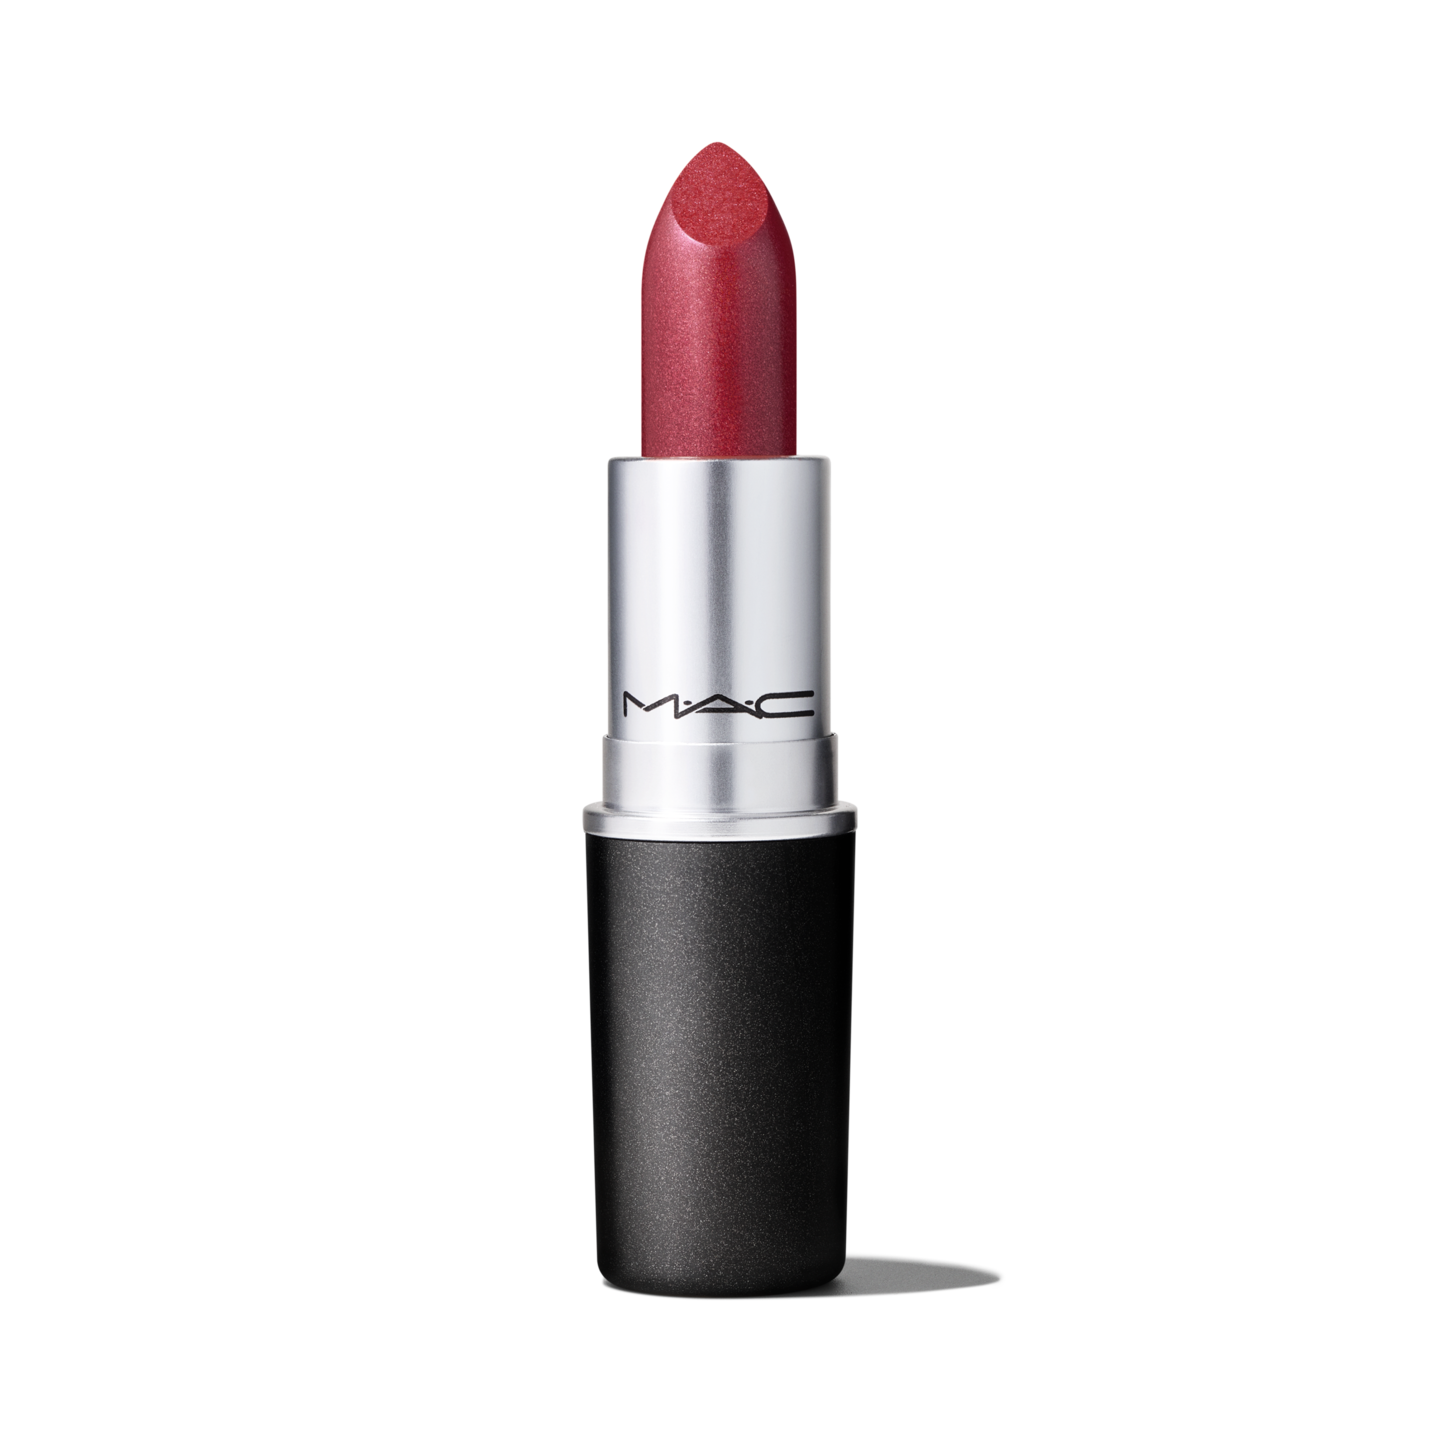  MAC Lipstick Lippenstift Matte Lipstick Taupe by MAC : Beauty  & Personal Care